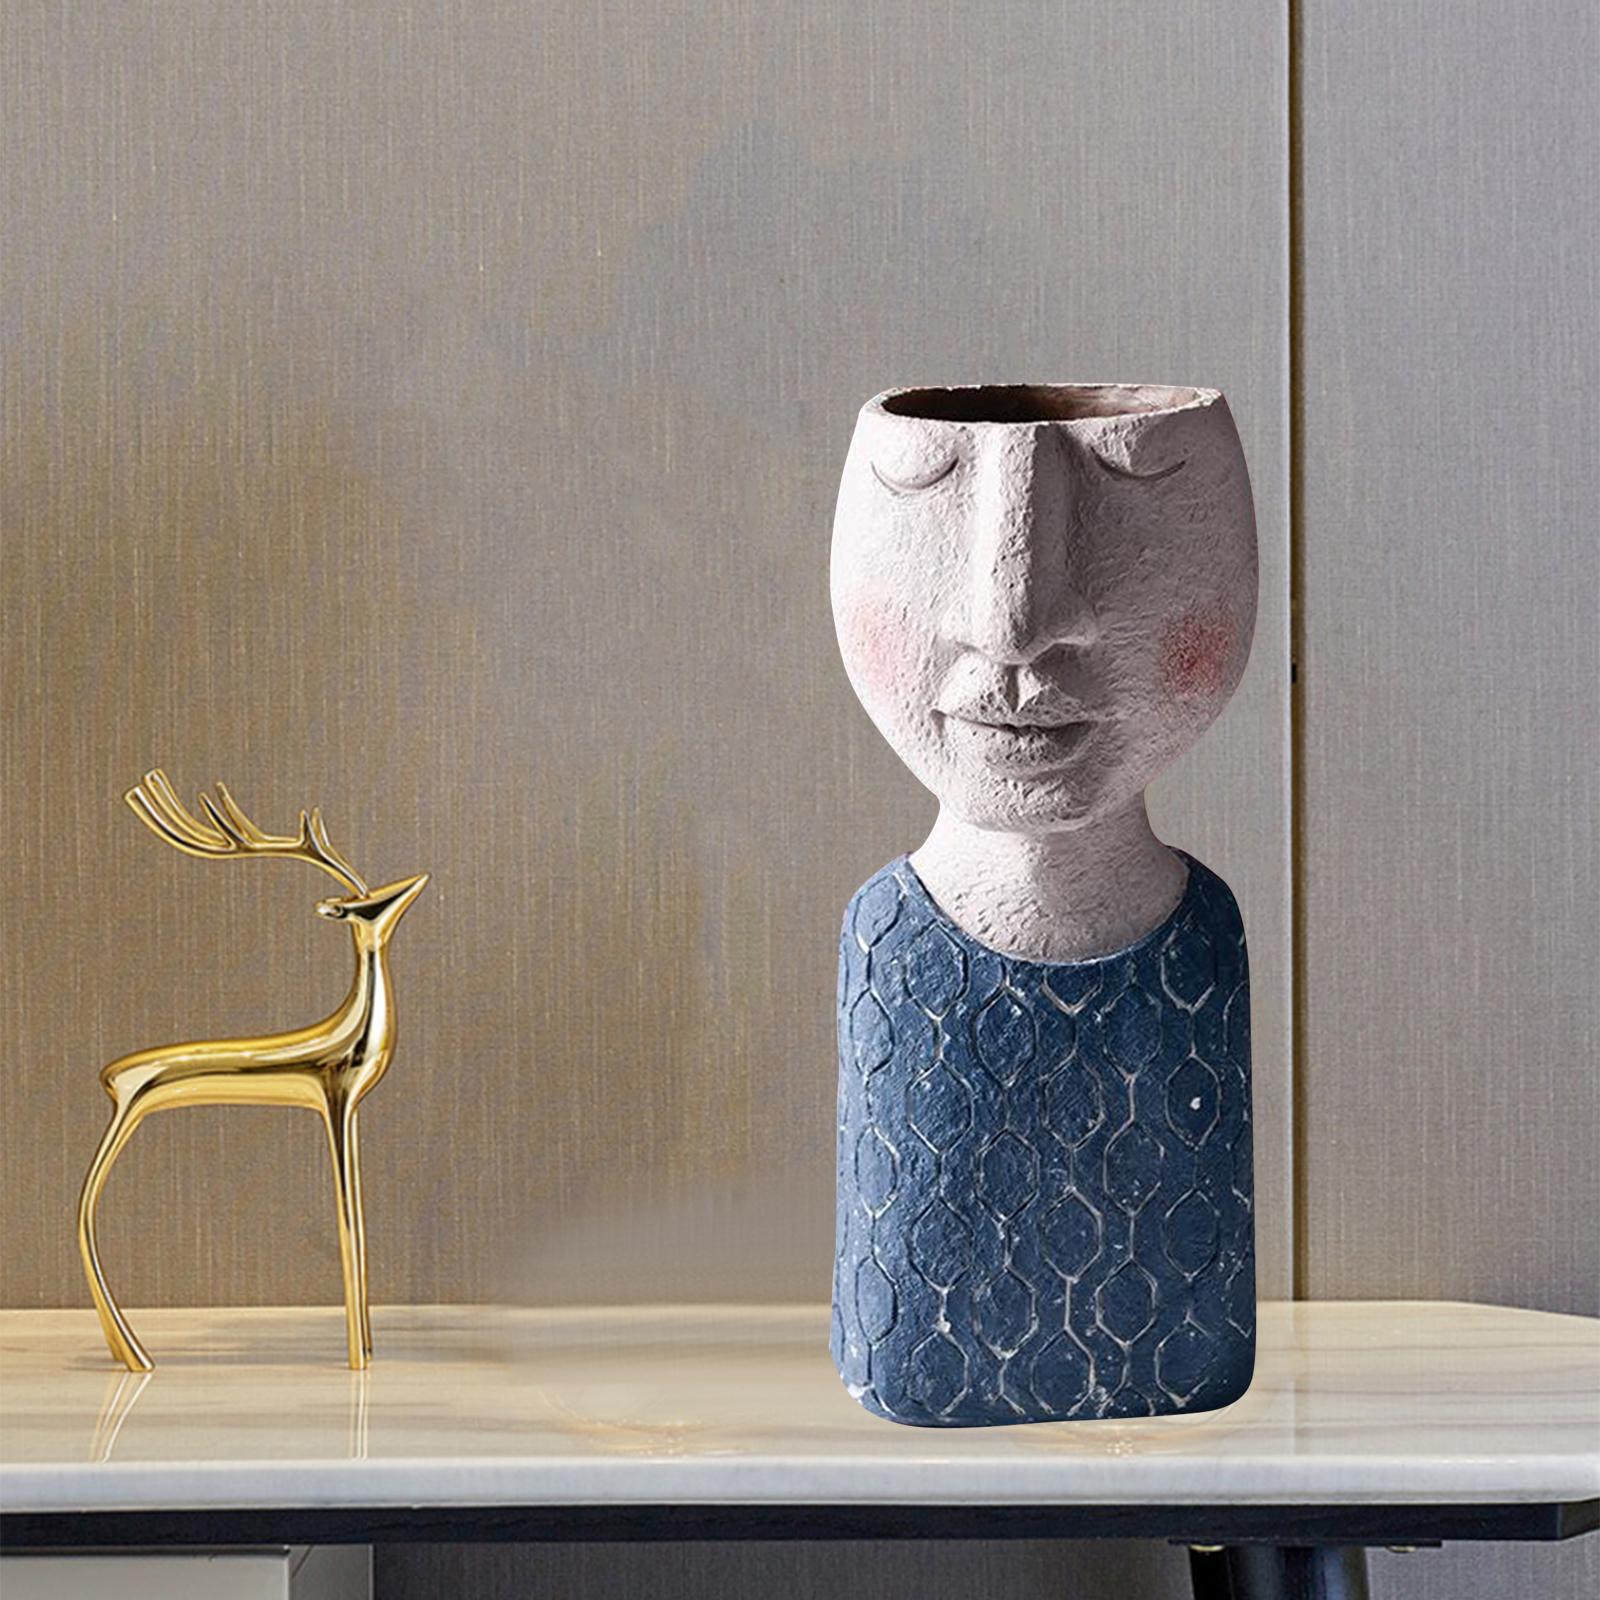 Artistic Portrait Flower Pot Vase Decorative Home Ornament Man